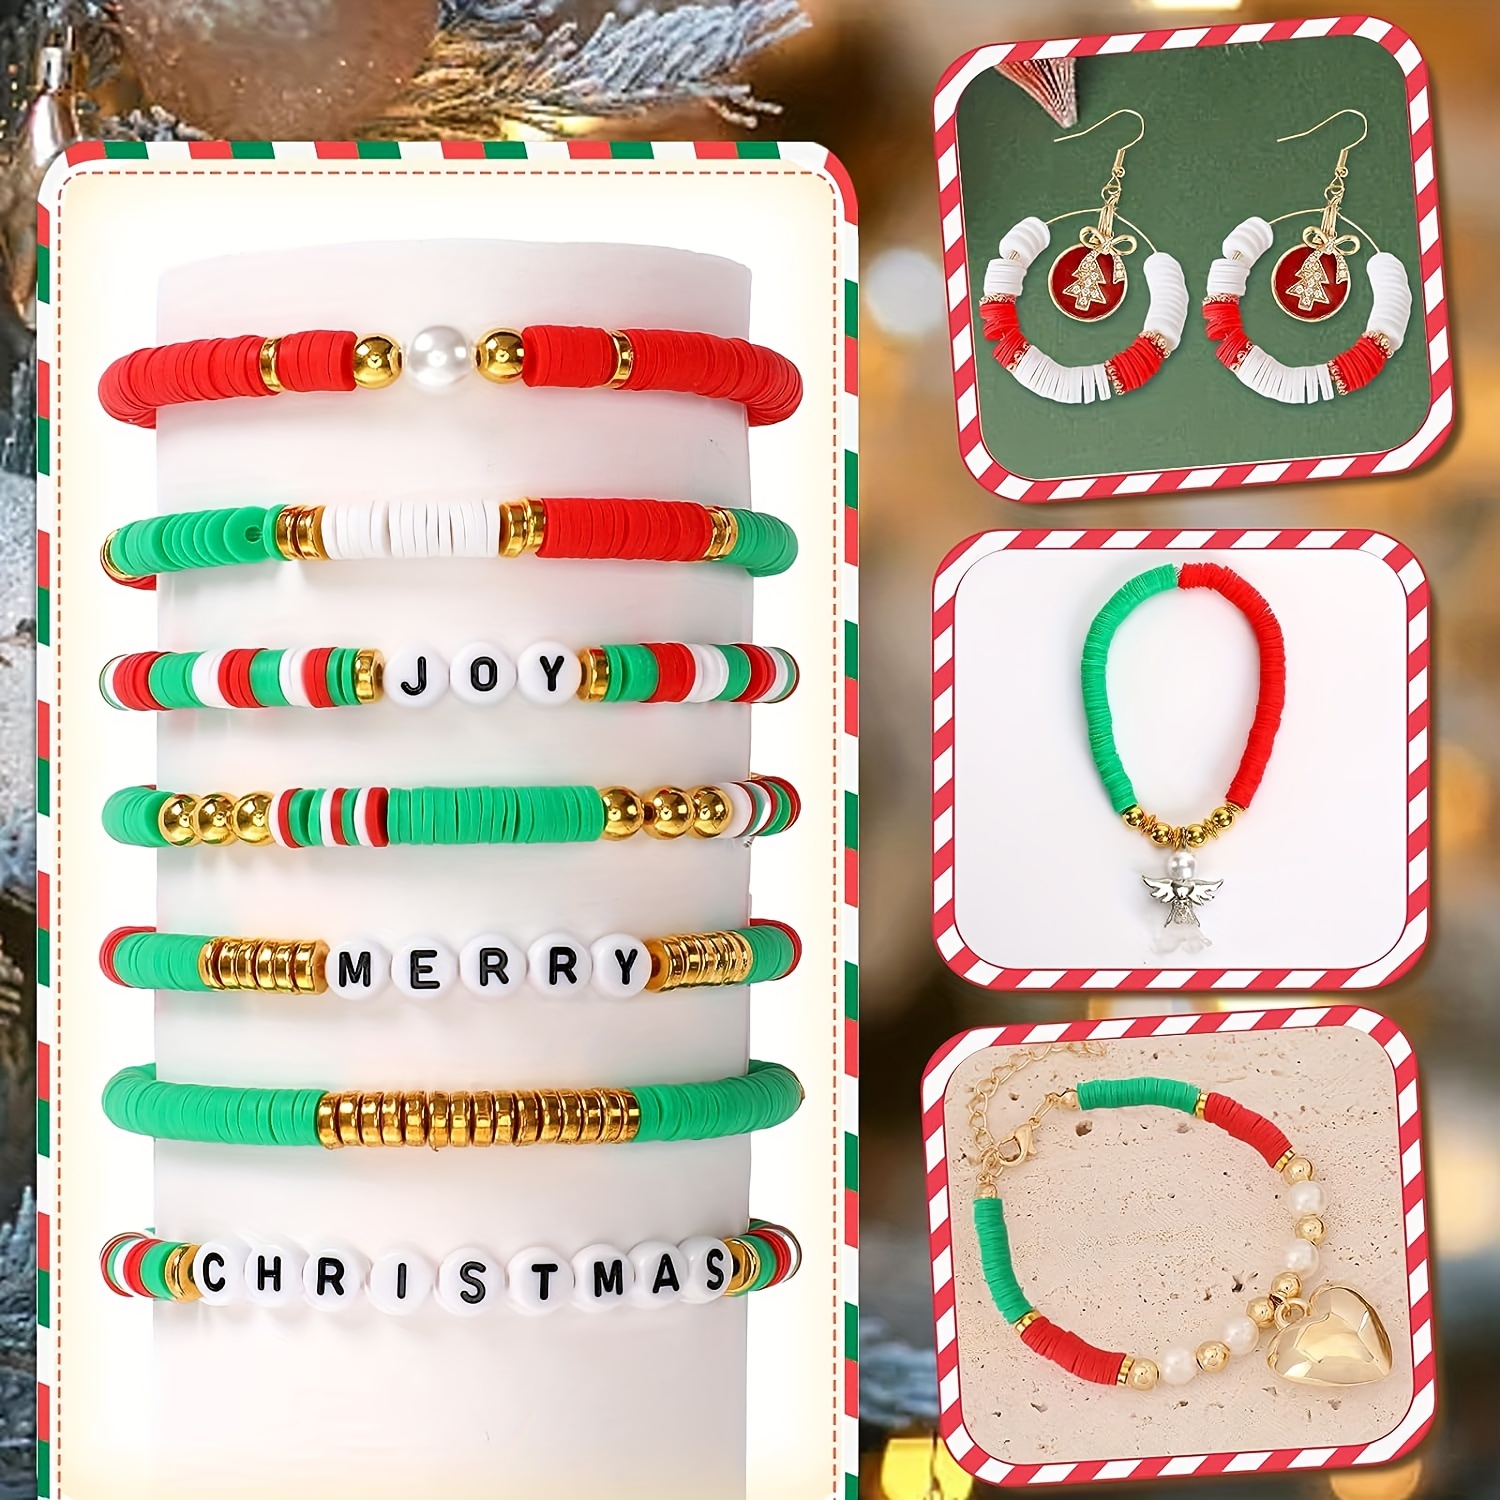 Litake Clay Beads Bracelet Making Kit DIY Handmade Bracelet Making